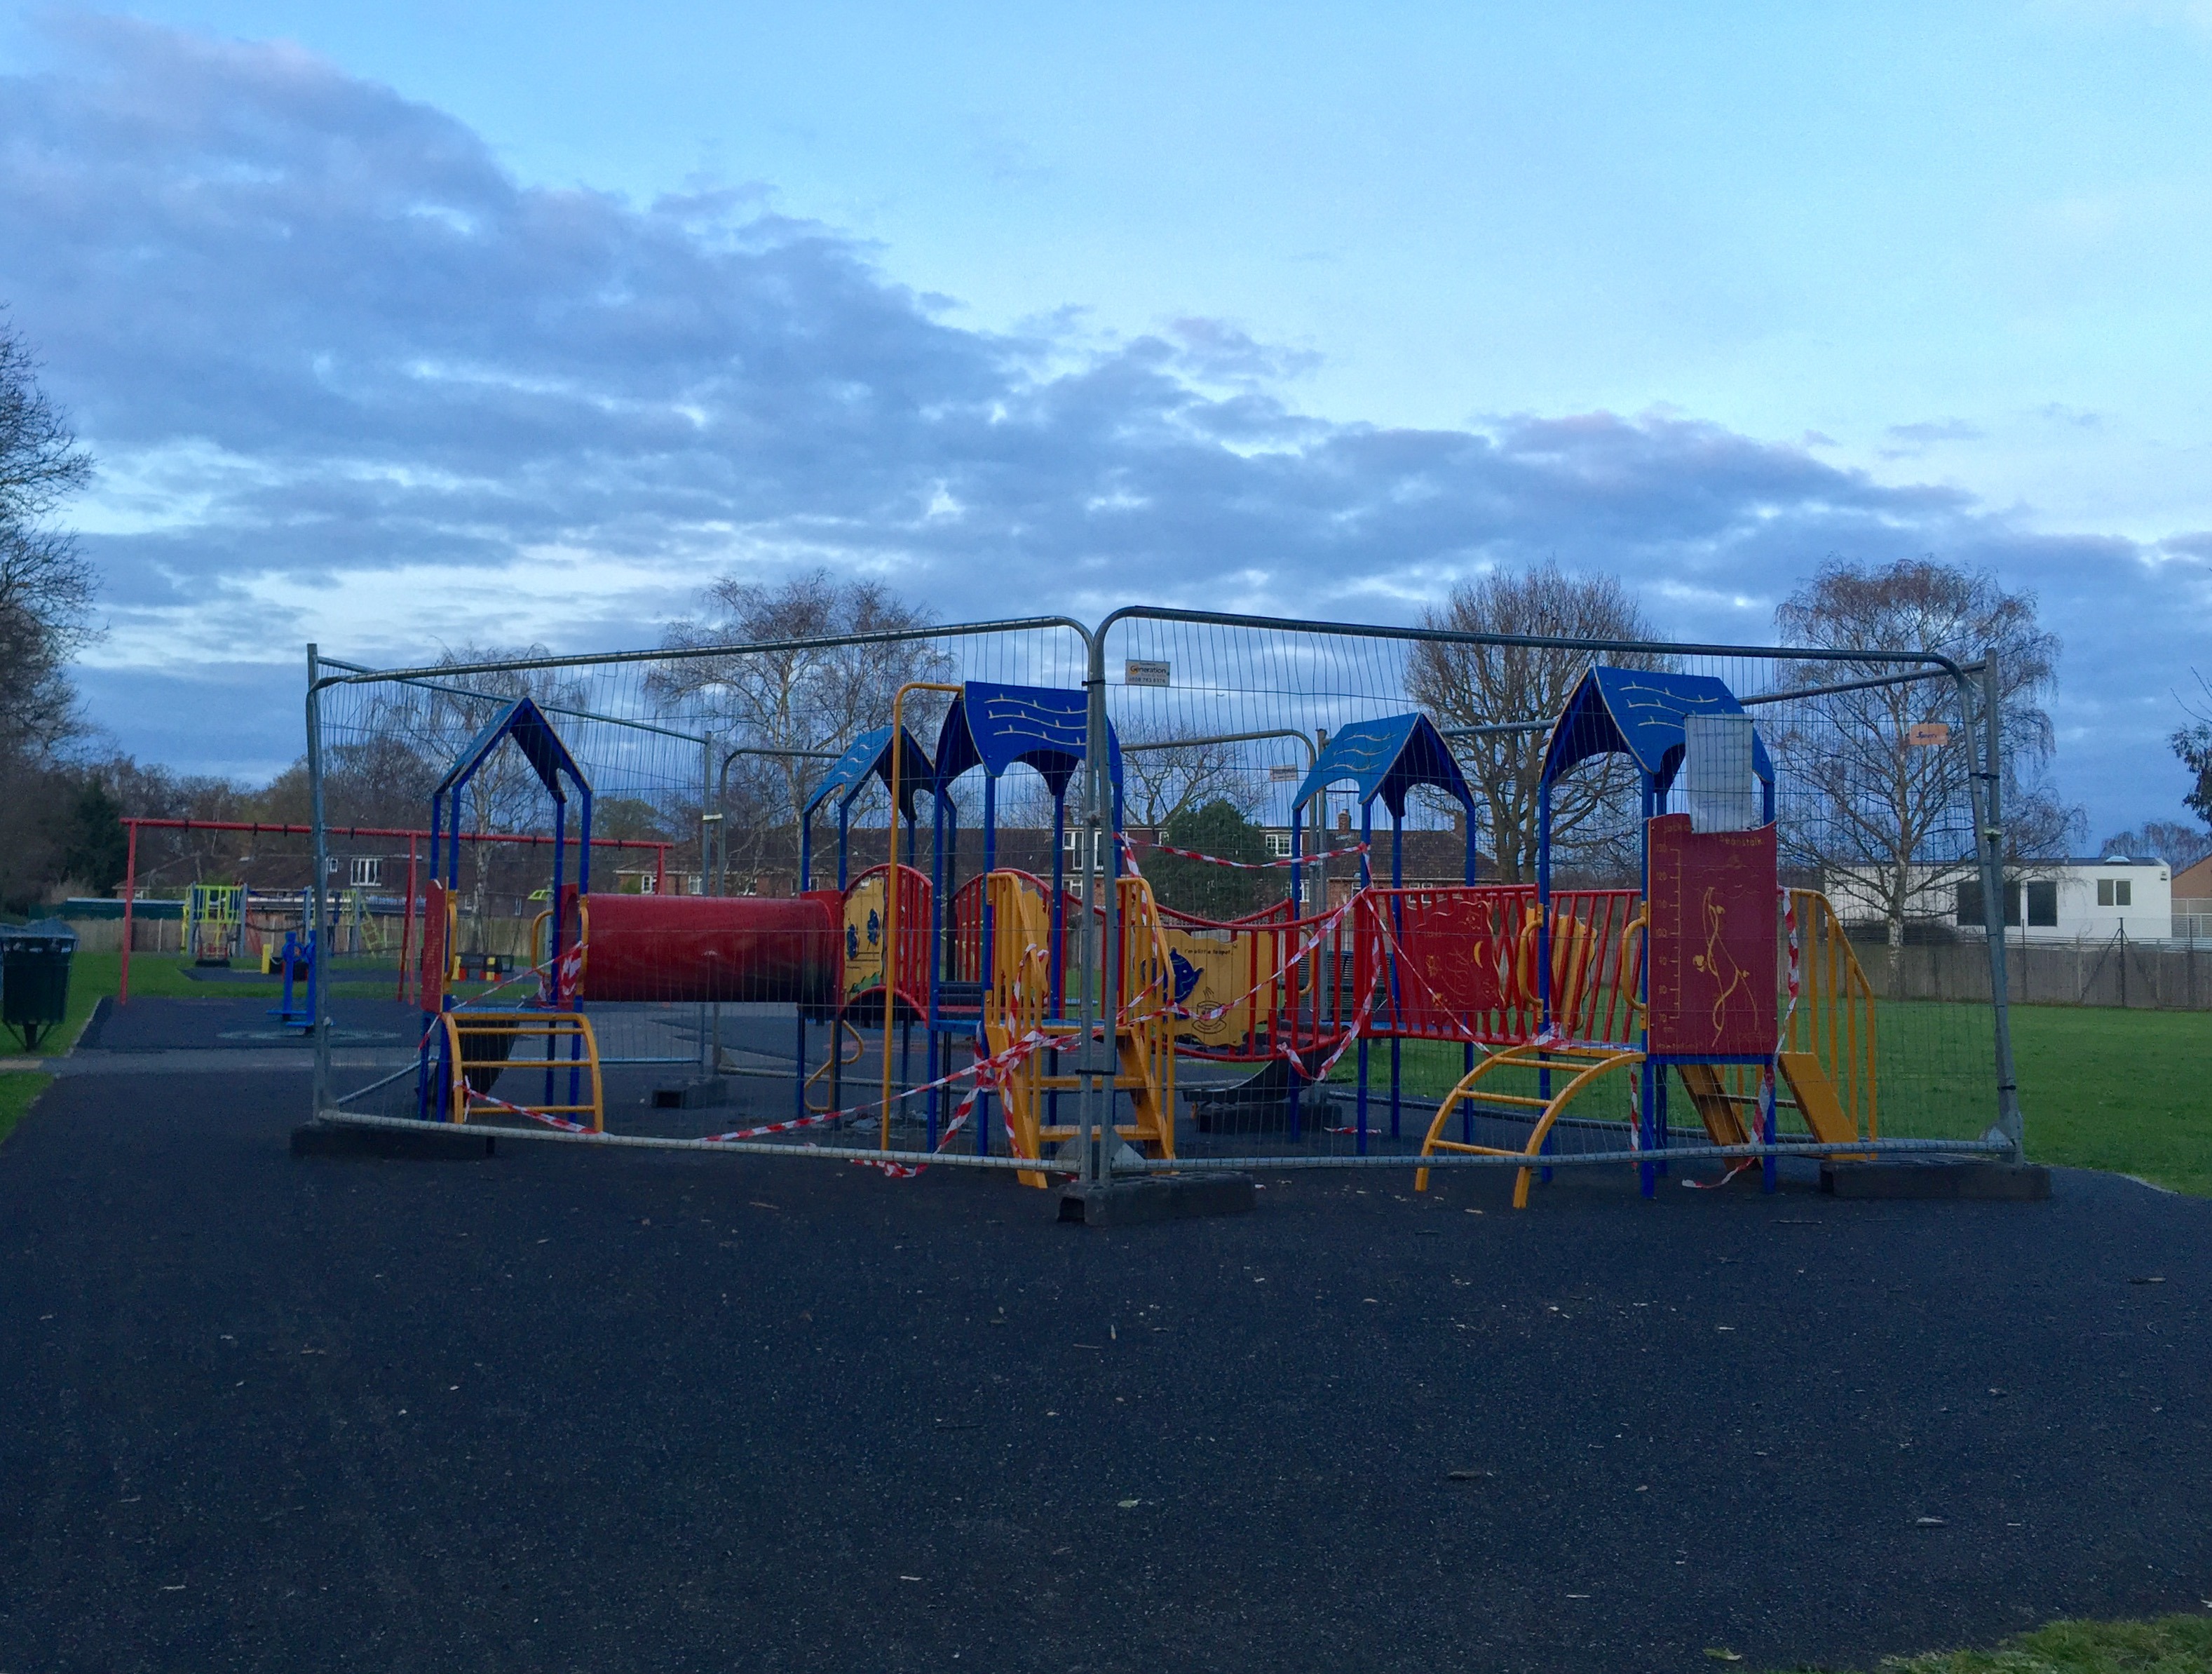 Vandals cause damage to a children’s playground in Ham